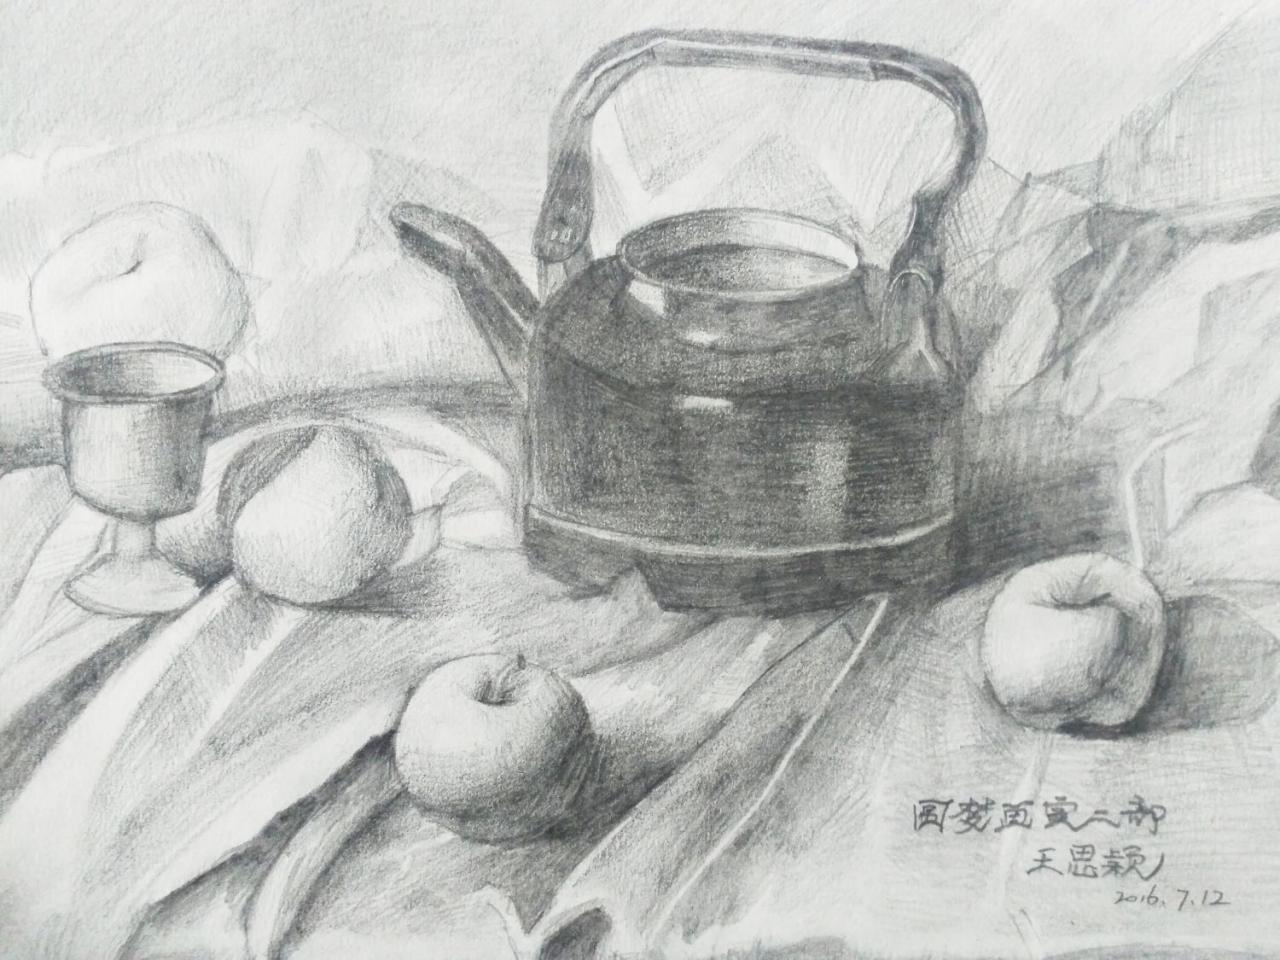 铝壶、酒杯、苹果 静物素描 王思颖画